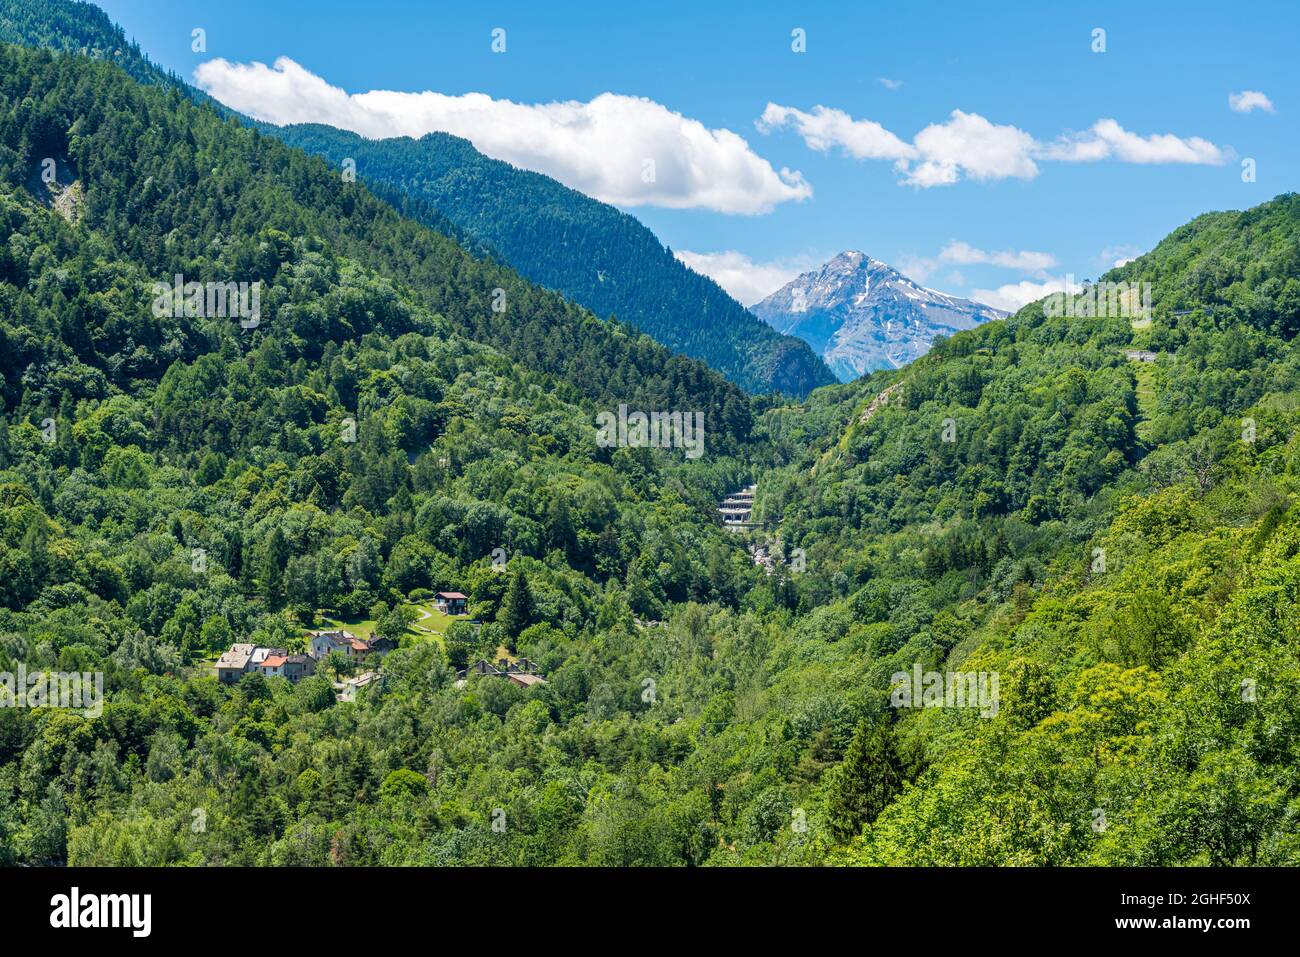 Le village pittoresque d'Exilles, dans la vallée de Susa. Province de Turin, Piémont, nord de l'Italie. Banque D'Images